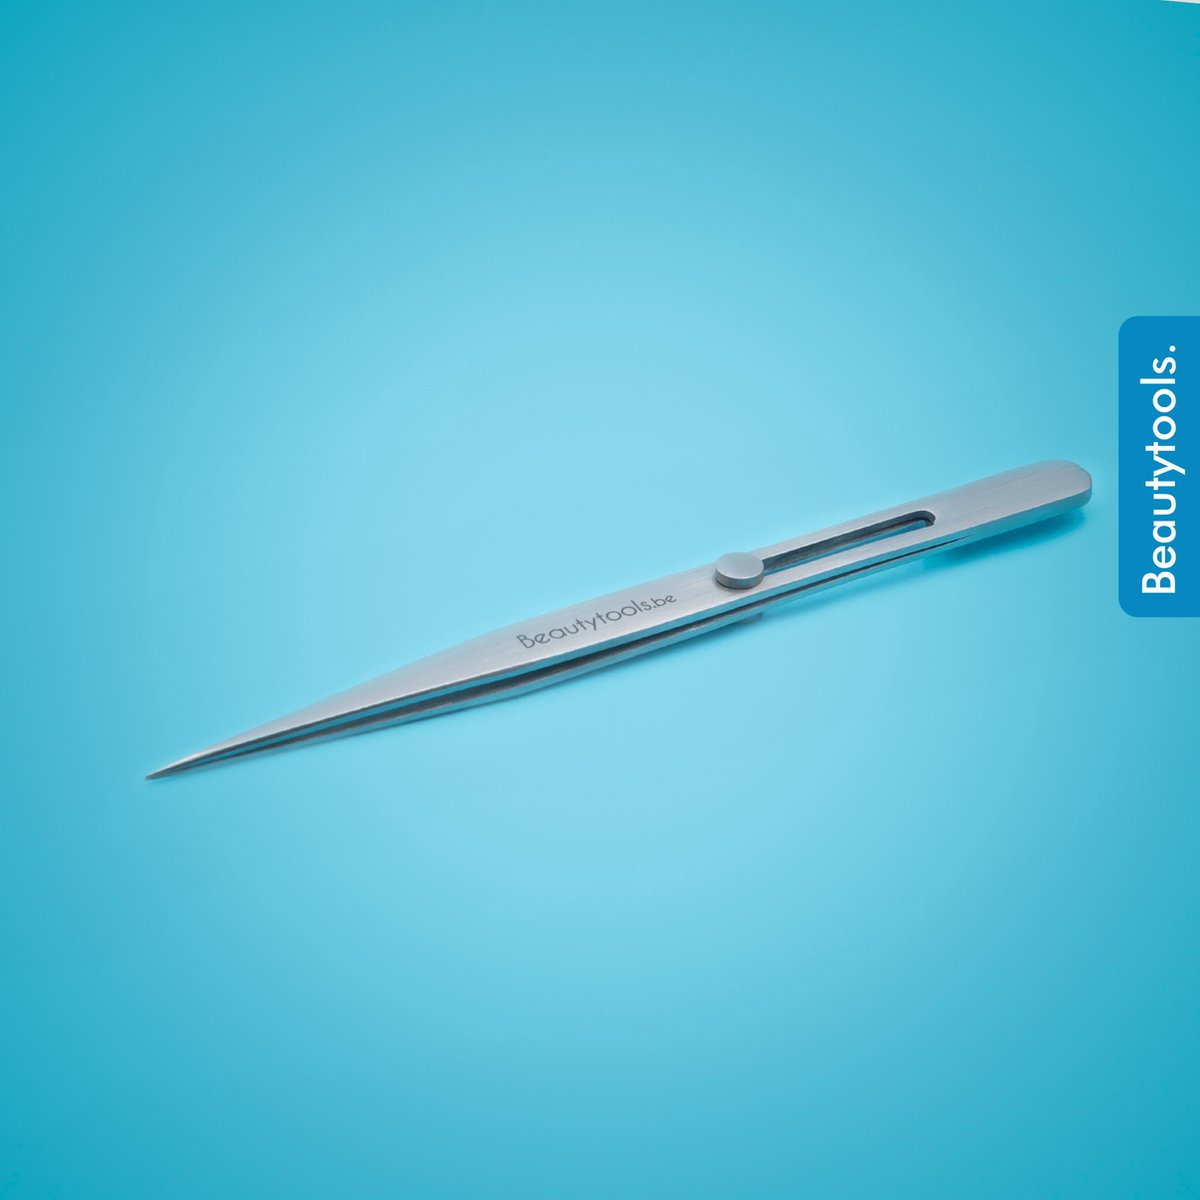 BeautyTools Punt Pincet PRECISION - Pincet met Verstevigde Punt Voor Wimperextensions - Wimper Pincet -Tweezers met Ingebouwde Schuifslot (14 cm) - Inox (PT-0973)